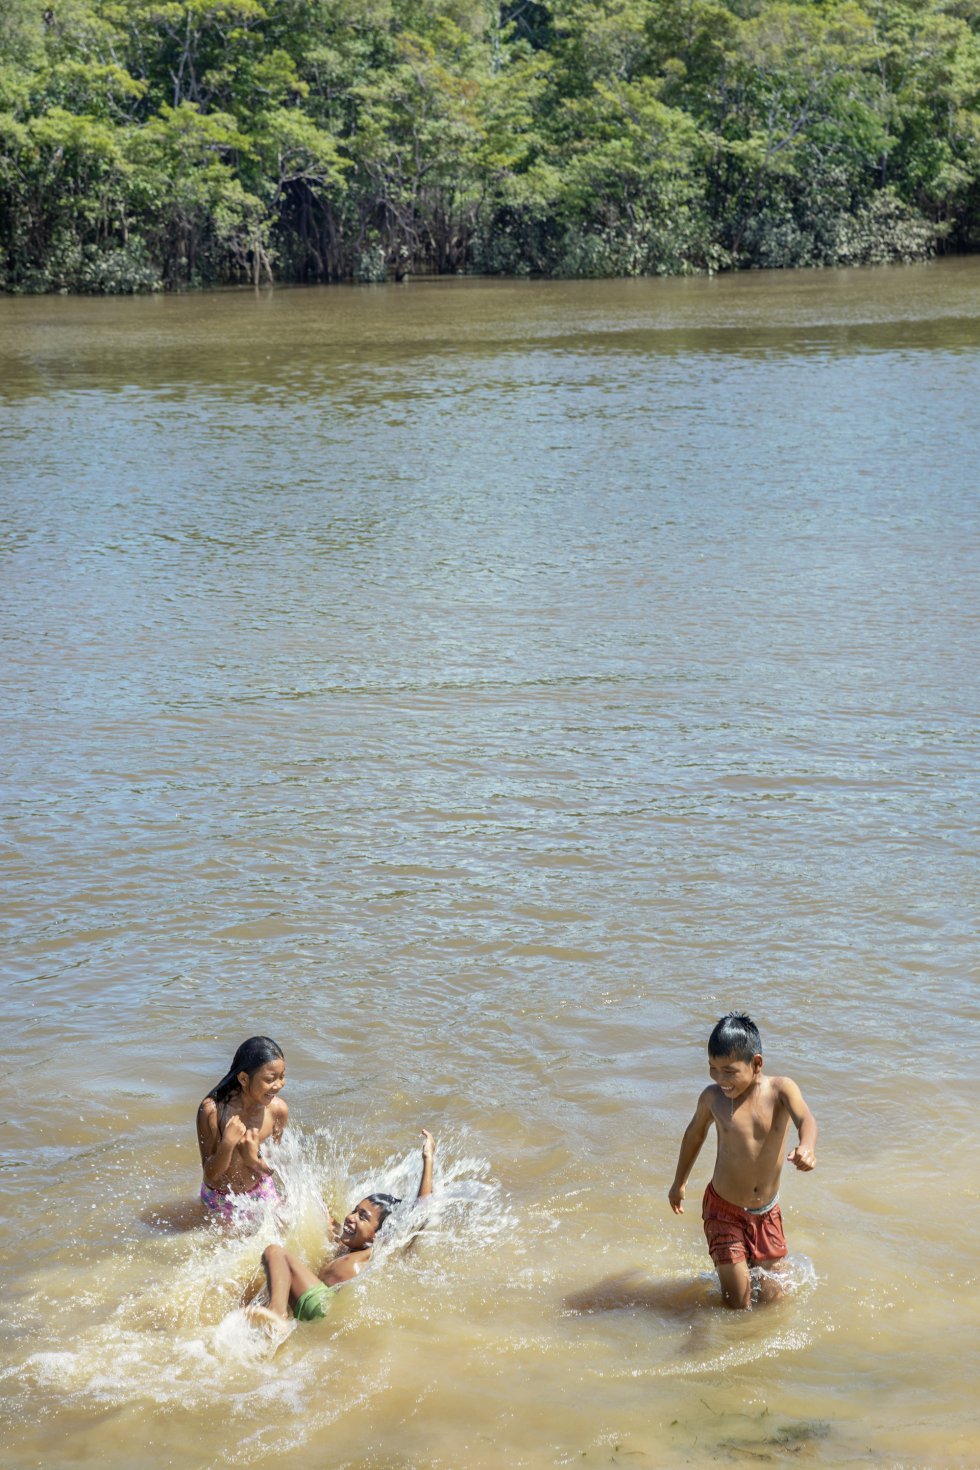 La vulnerabilidad económica y social de las poblaciones de la Amazonia, especialmente de los indígenas, les convierten muchas veces en el objetivo de las redes de trata con menos escrúpulos. Niños jugando en la orilla del río Igara Paraná en San Francisco (Colombia), uno de los afluentes del Amazonas.